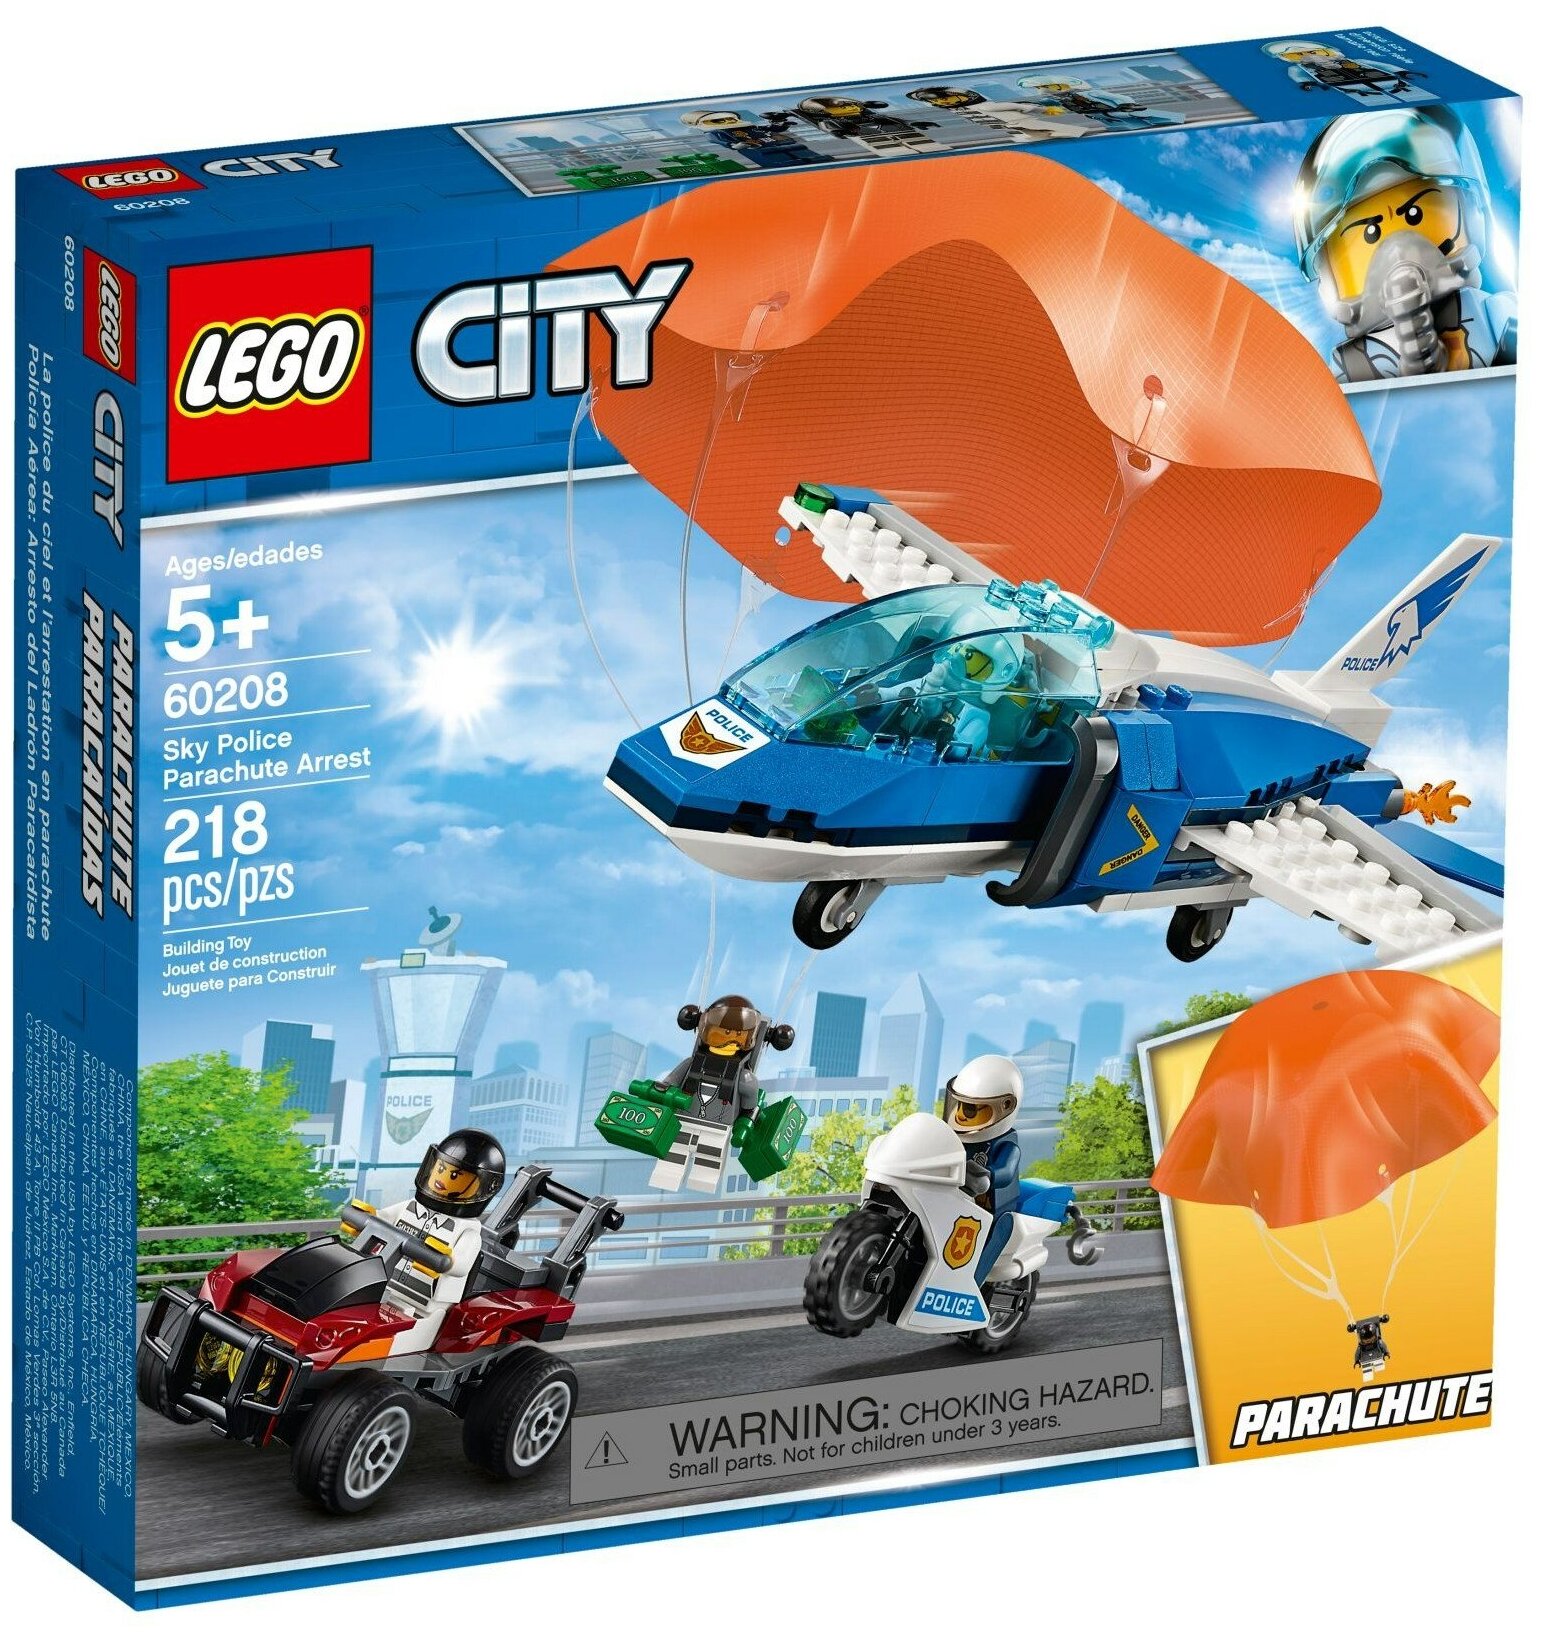 Конструктор LEGO City 60208 Воздушная полиция: арест парашютиста, 218 дет.